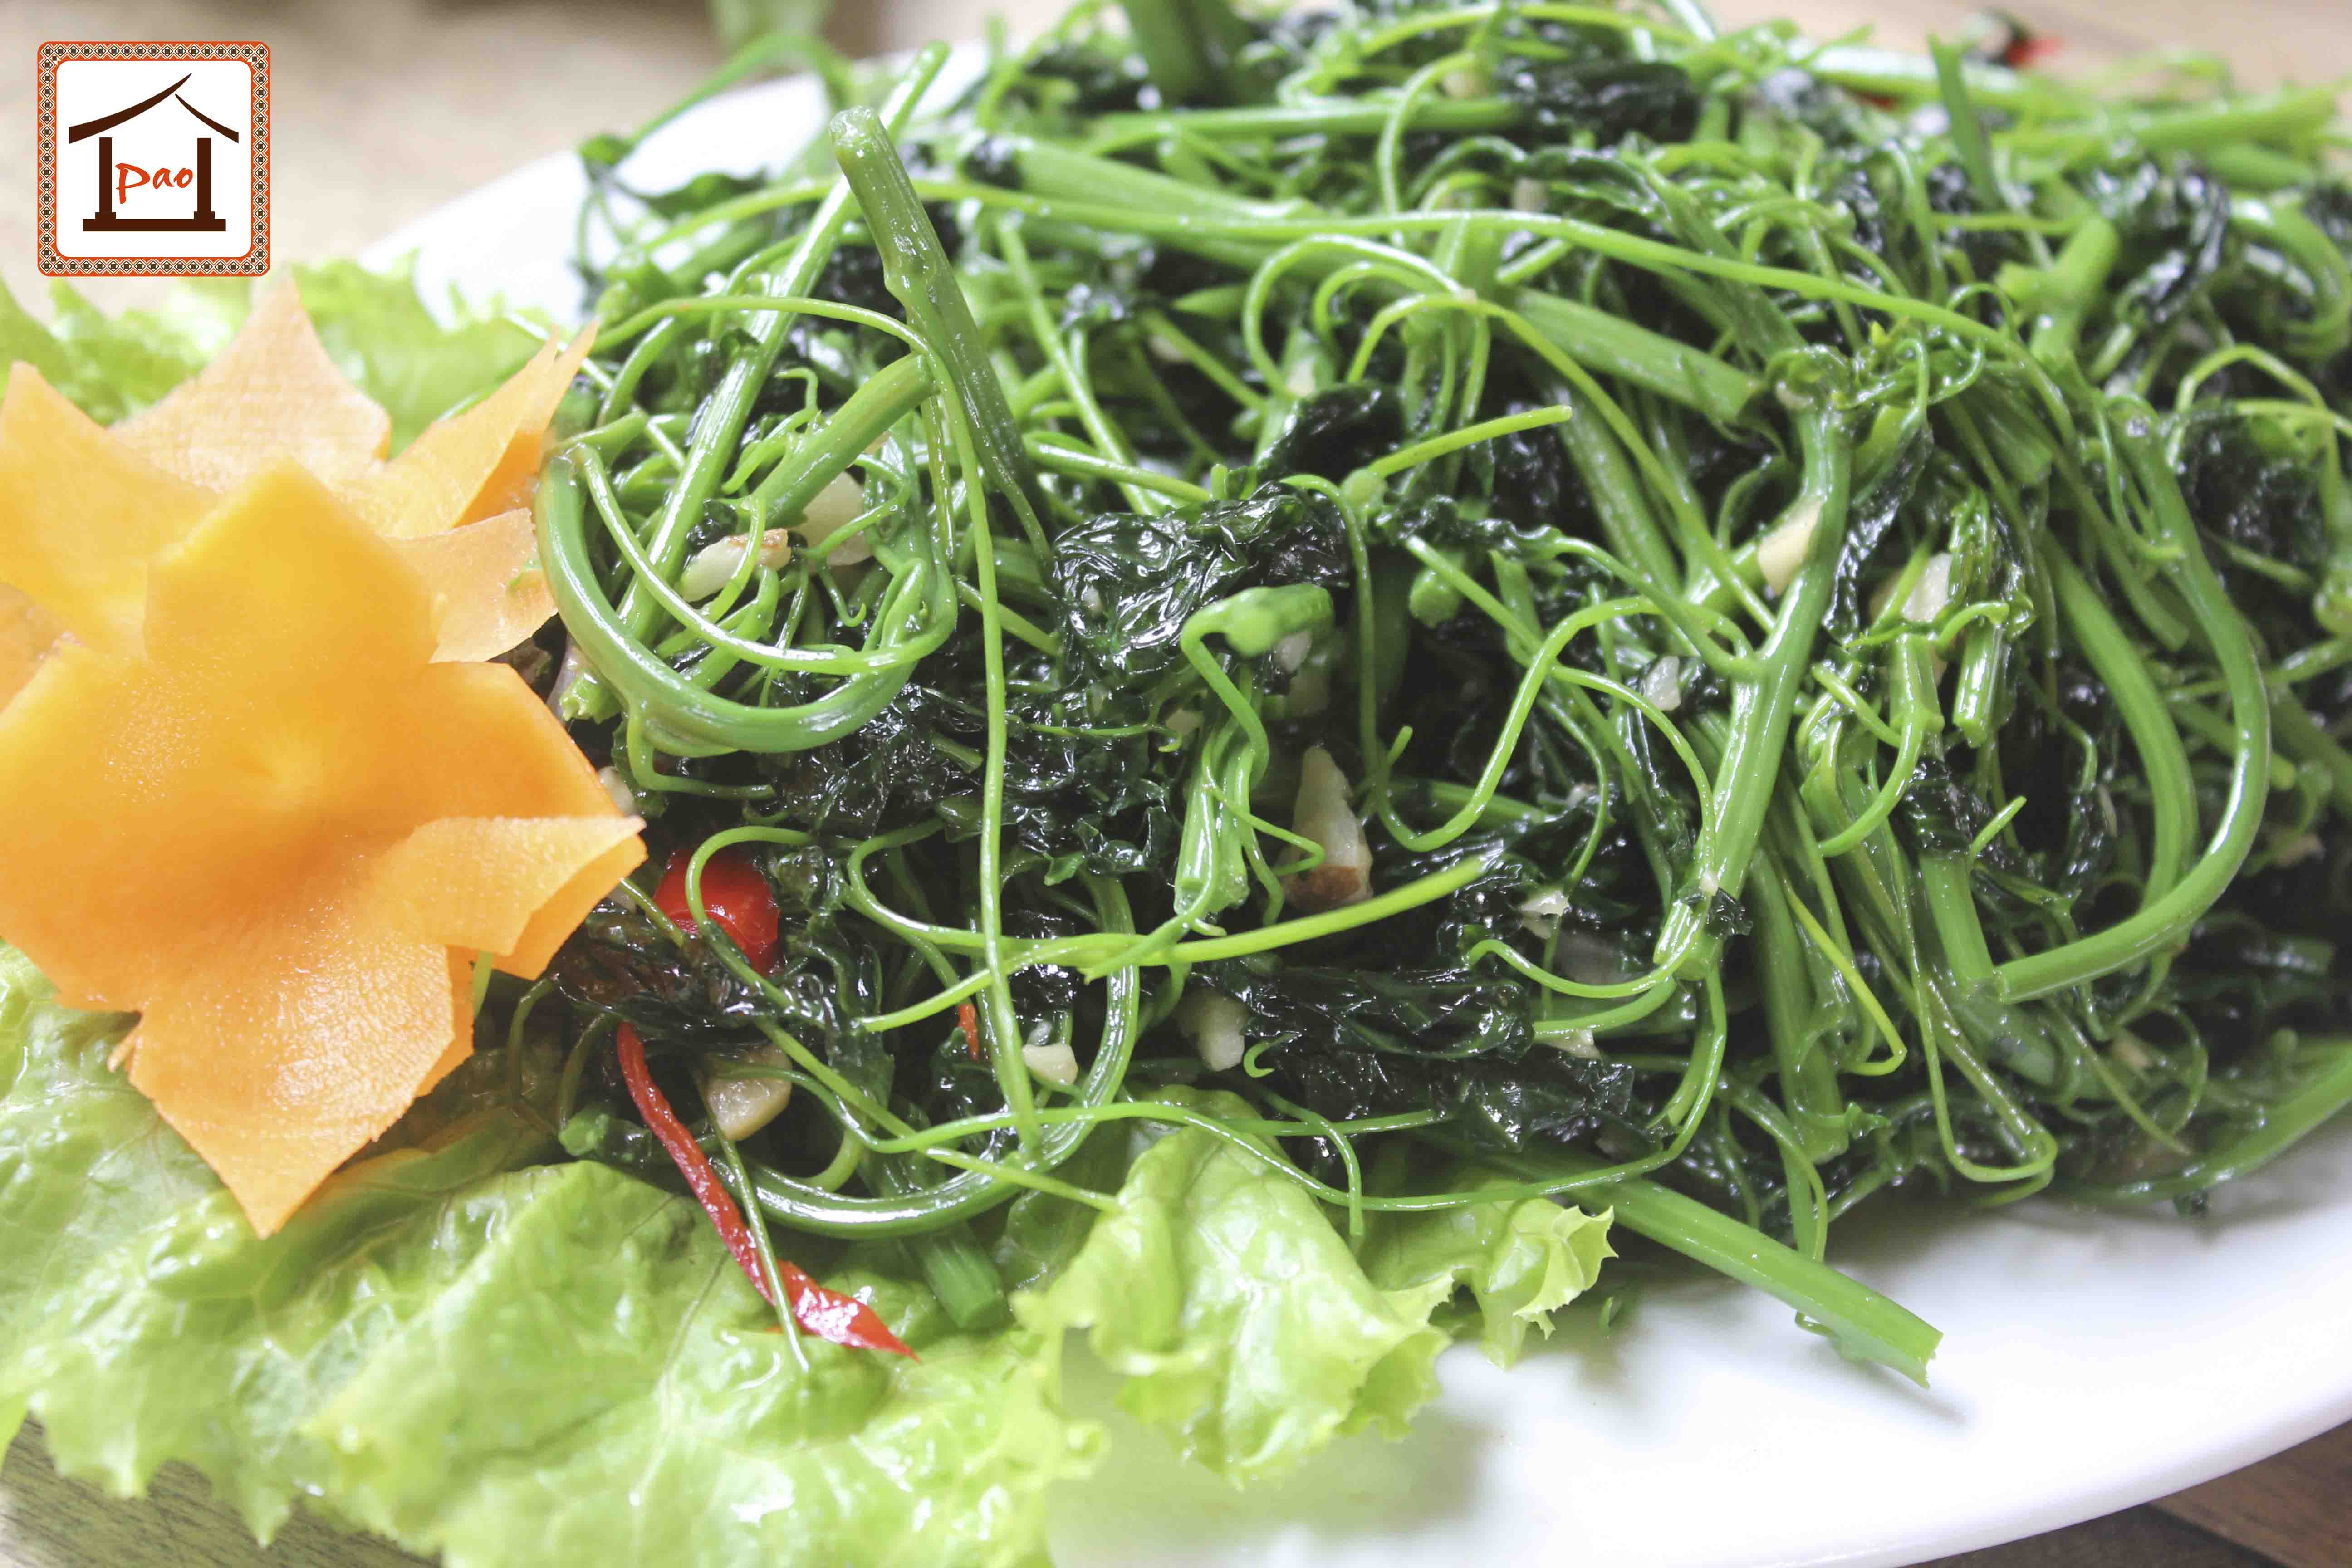  10 món ăn trưa cho dân văn phòng siêu hấp dẫn tại Pao Quán